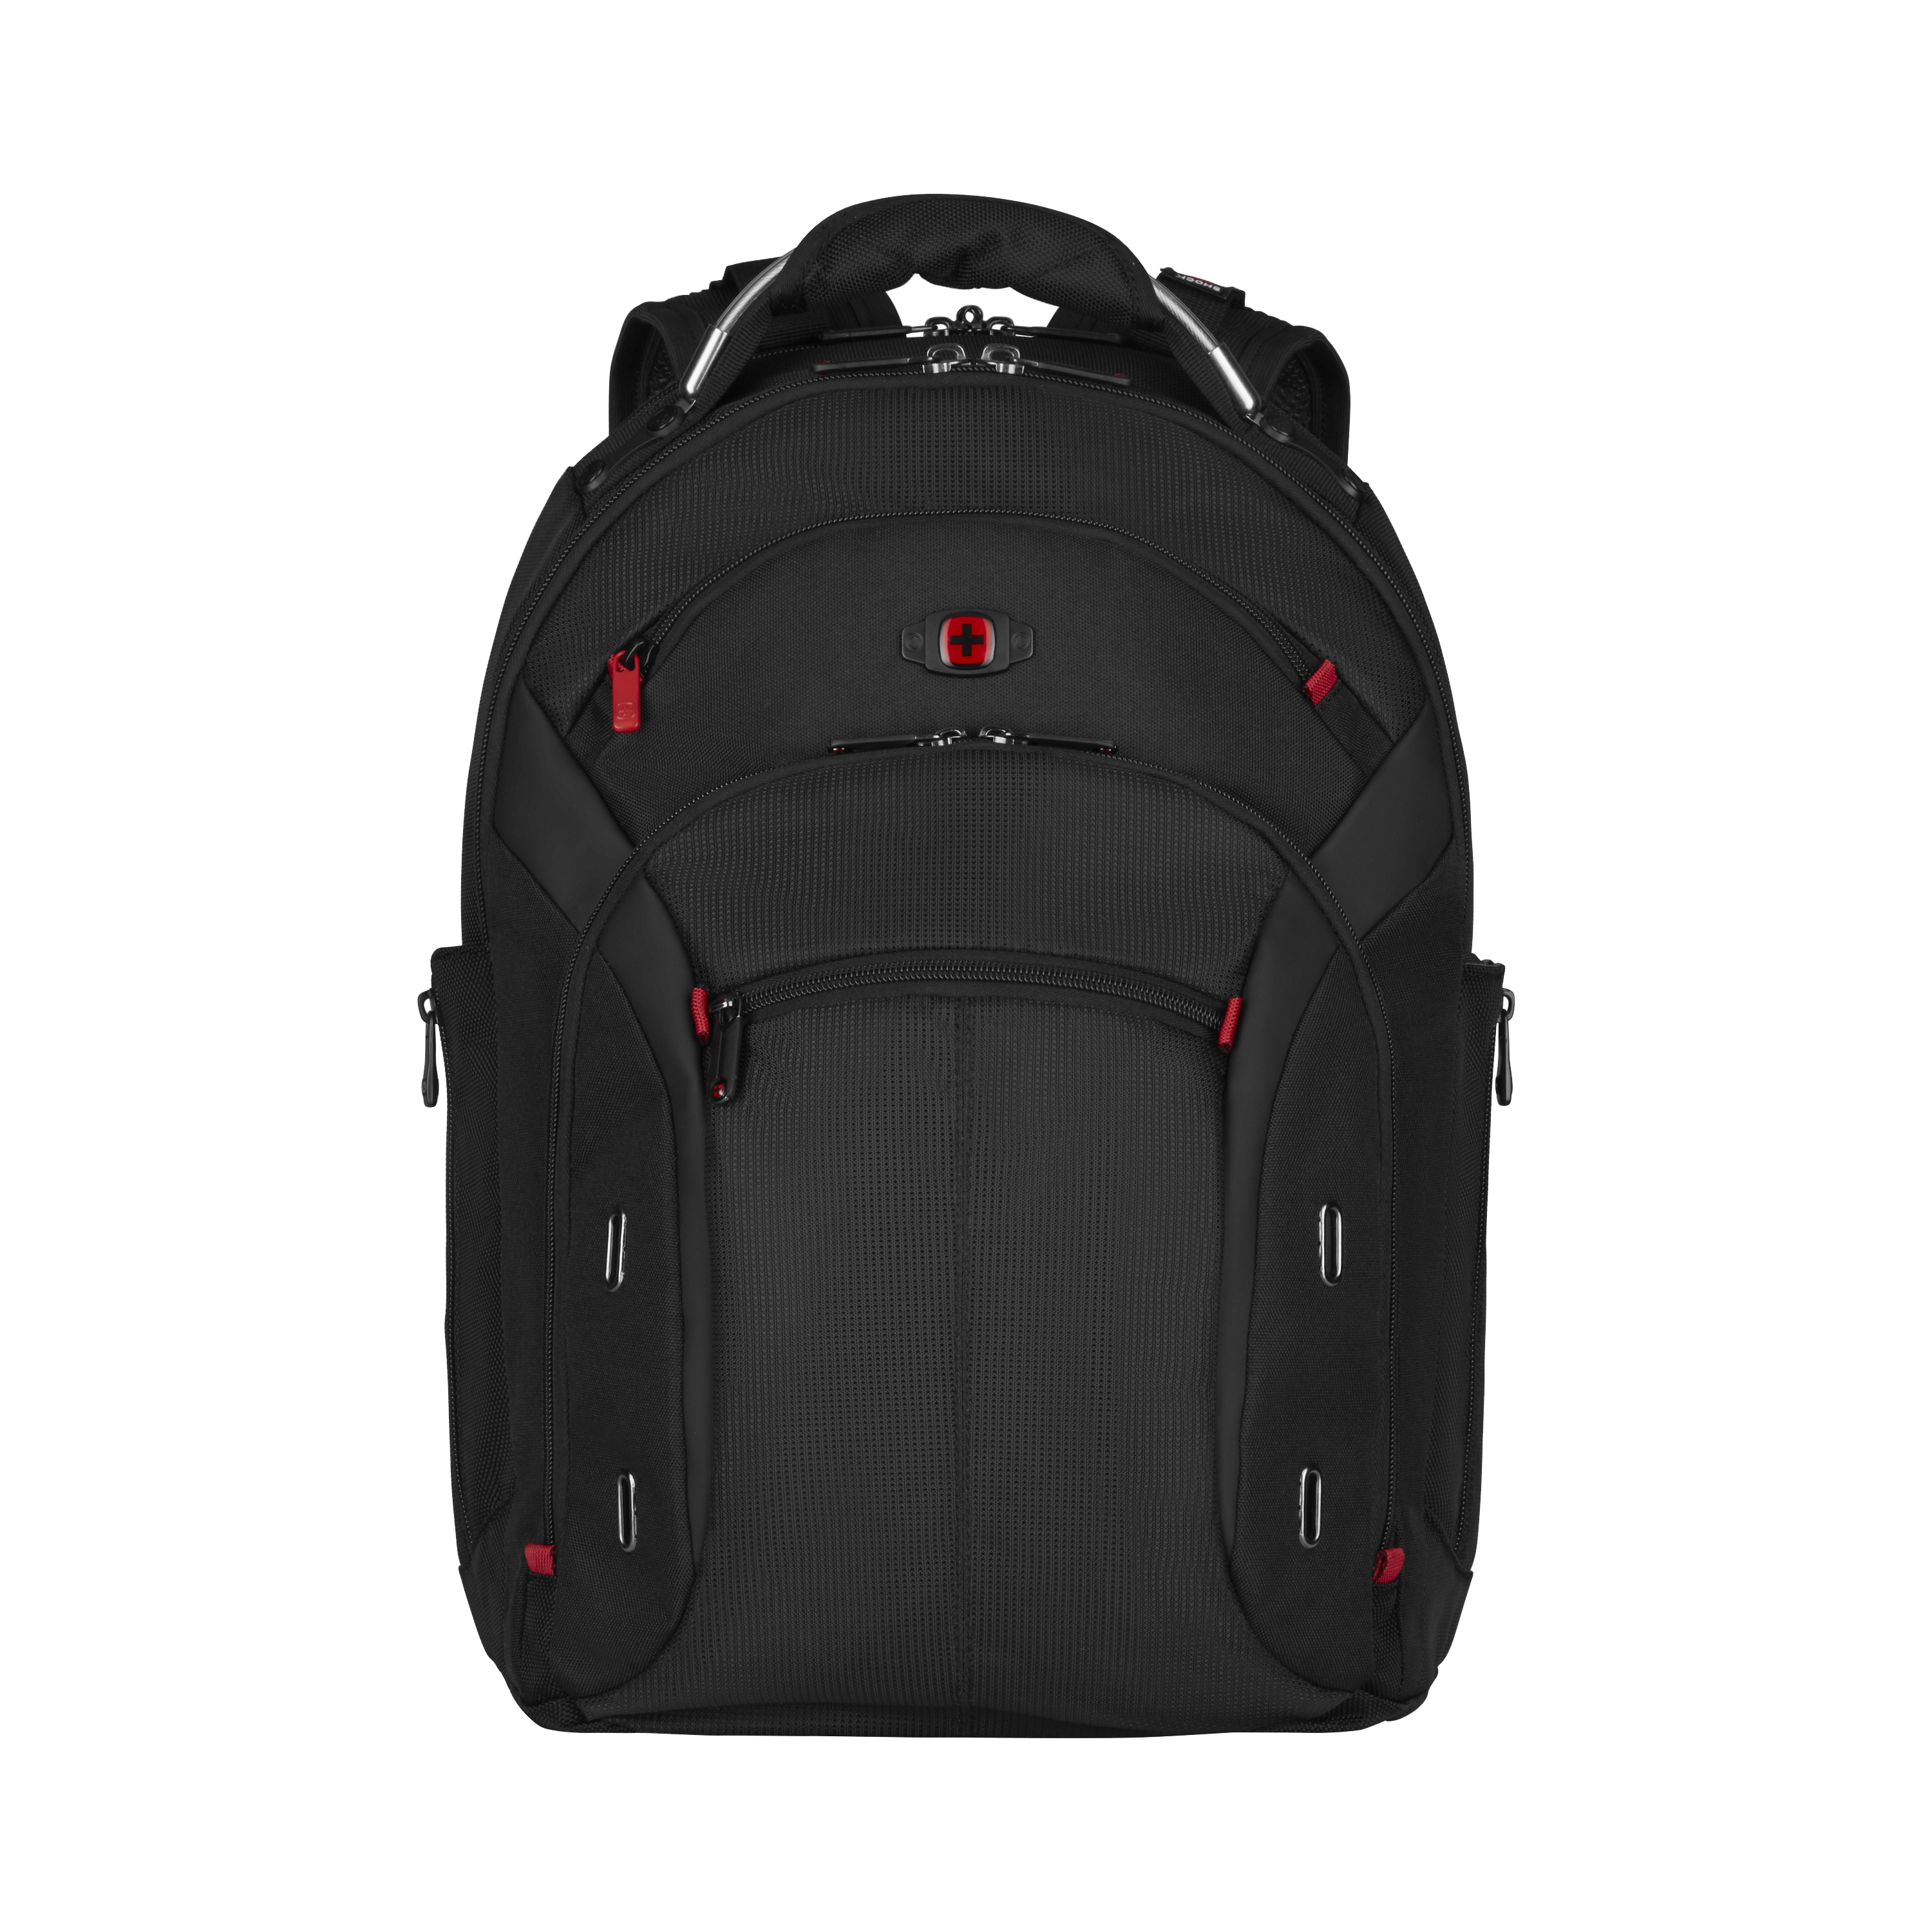 Wenger laptop backpack